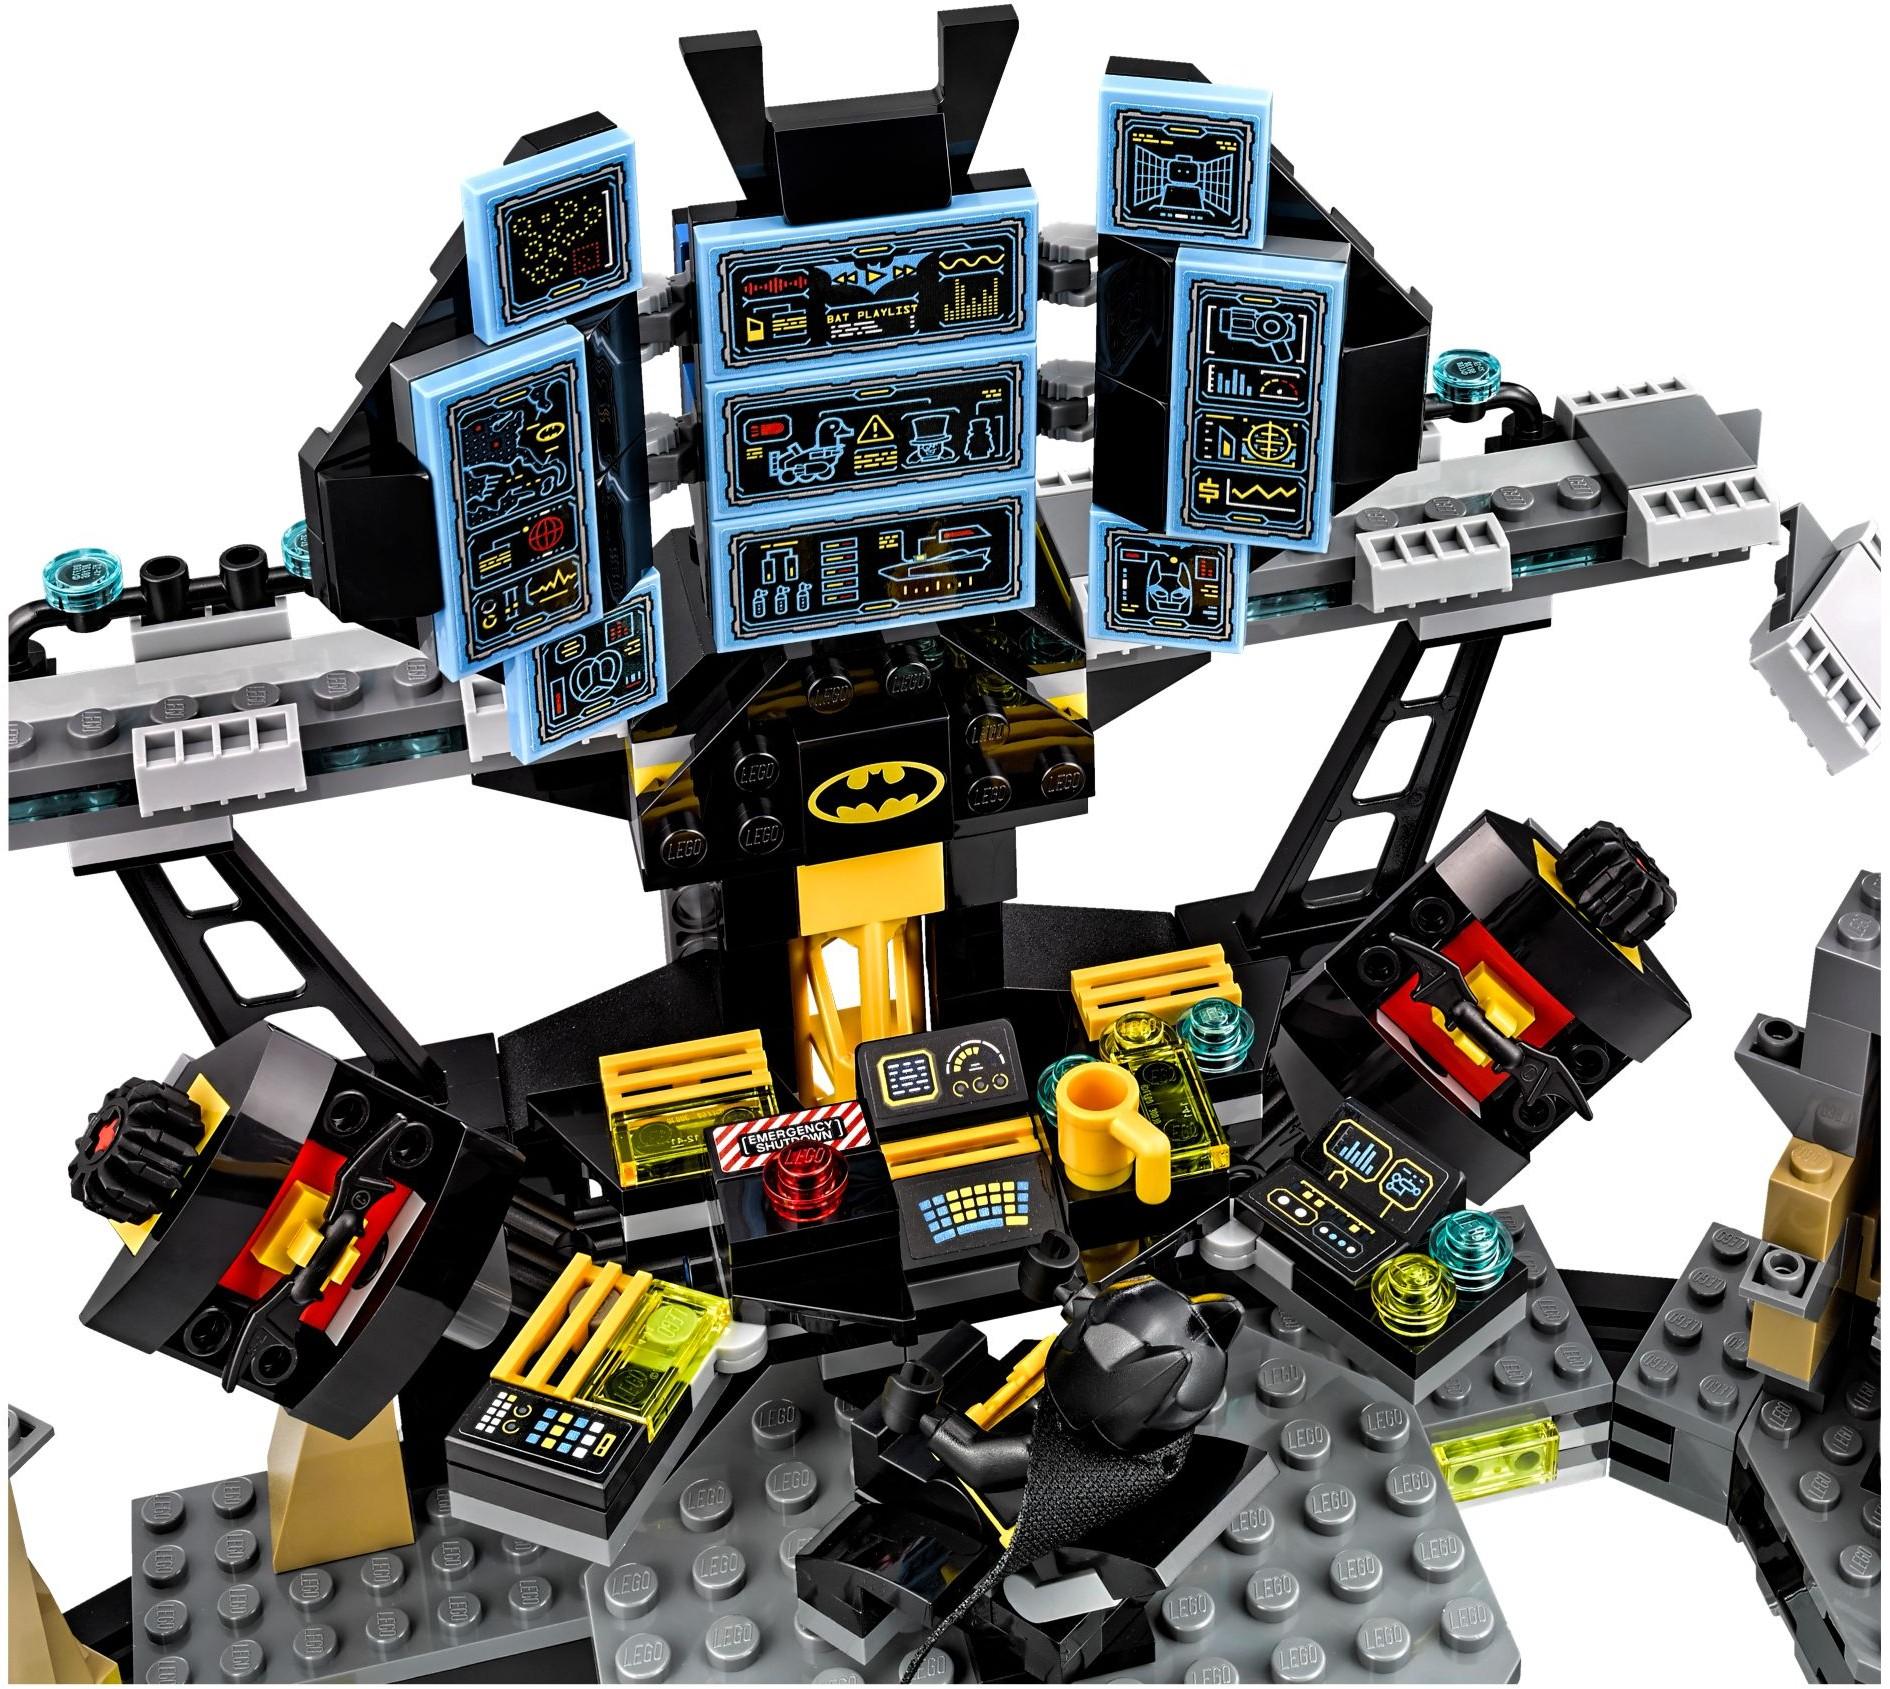 Mua đồ chơi LEGO Batman Movie 70909 - Hang Động Batcave của Người Dơi (LEGO  Batman Movie Batcave Break-in 70909) 